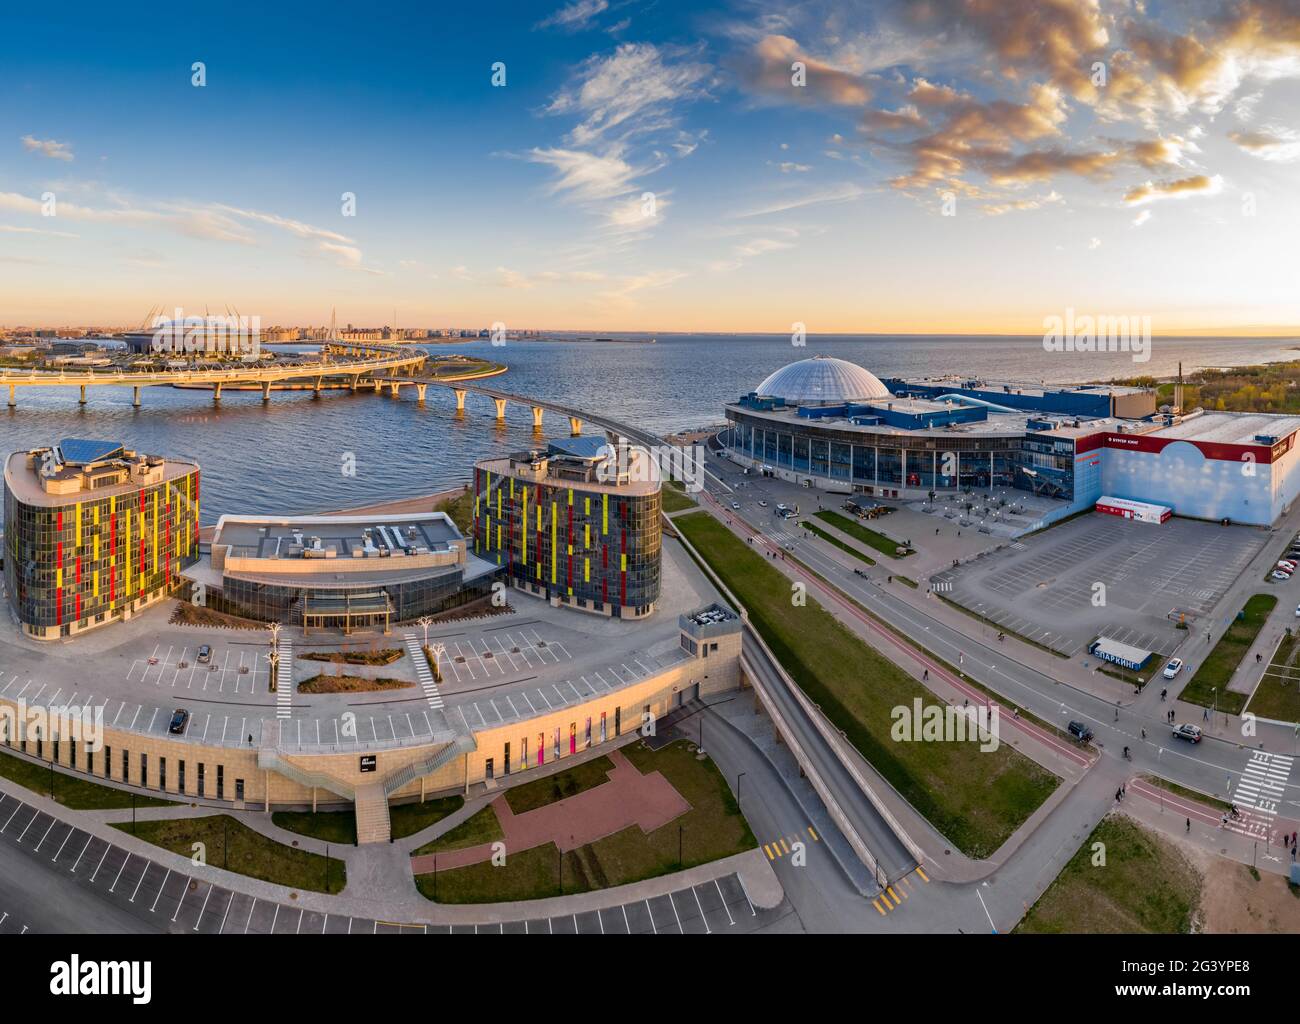 Rusia, San Petersburgo, 06 de mayo de 2020: Imagen panorámica aérea del centro de comercio Piterland al atardecer, Parque de 300 aniversarios y de Foto de stock